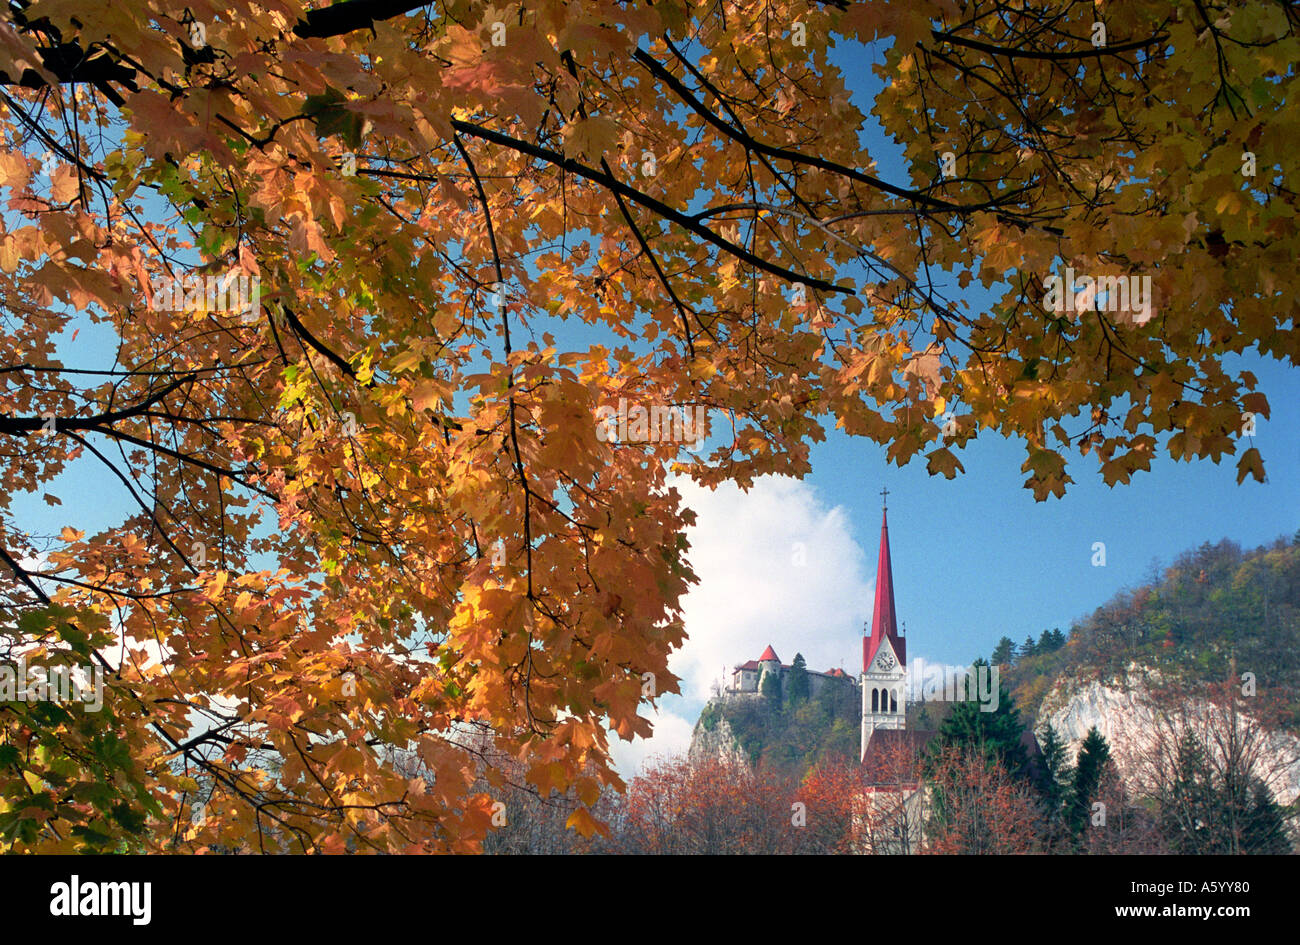 Der See von Bled spire Herbst Farbe Stadt und Burg von Bled durch Blätter in herbstlichen Farben gerahmte Slowenien Stockfoto